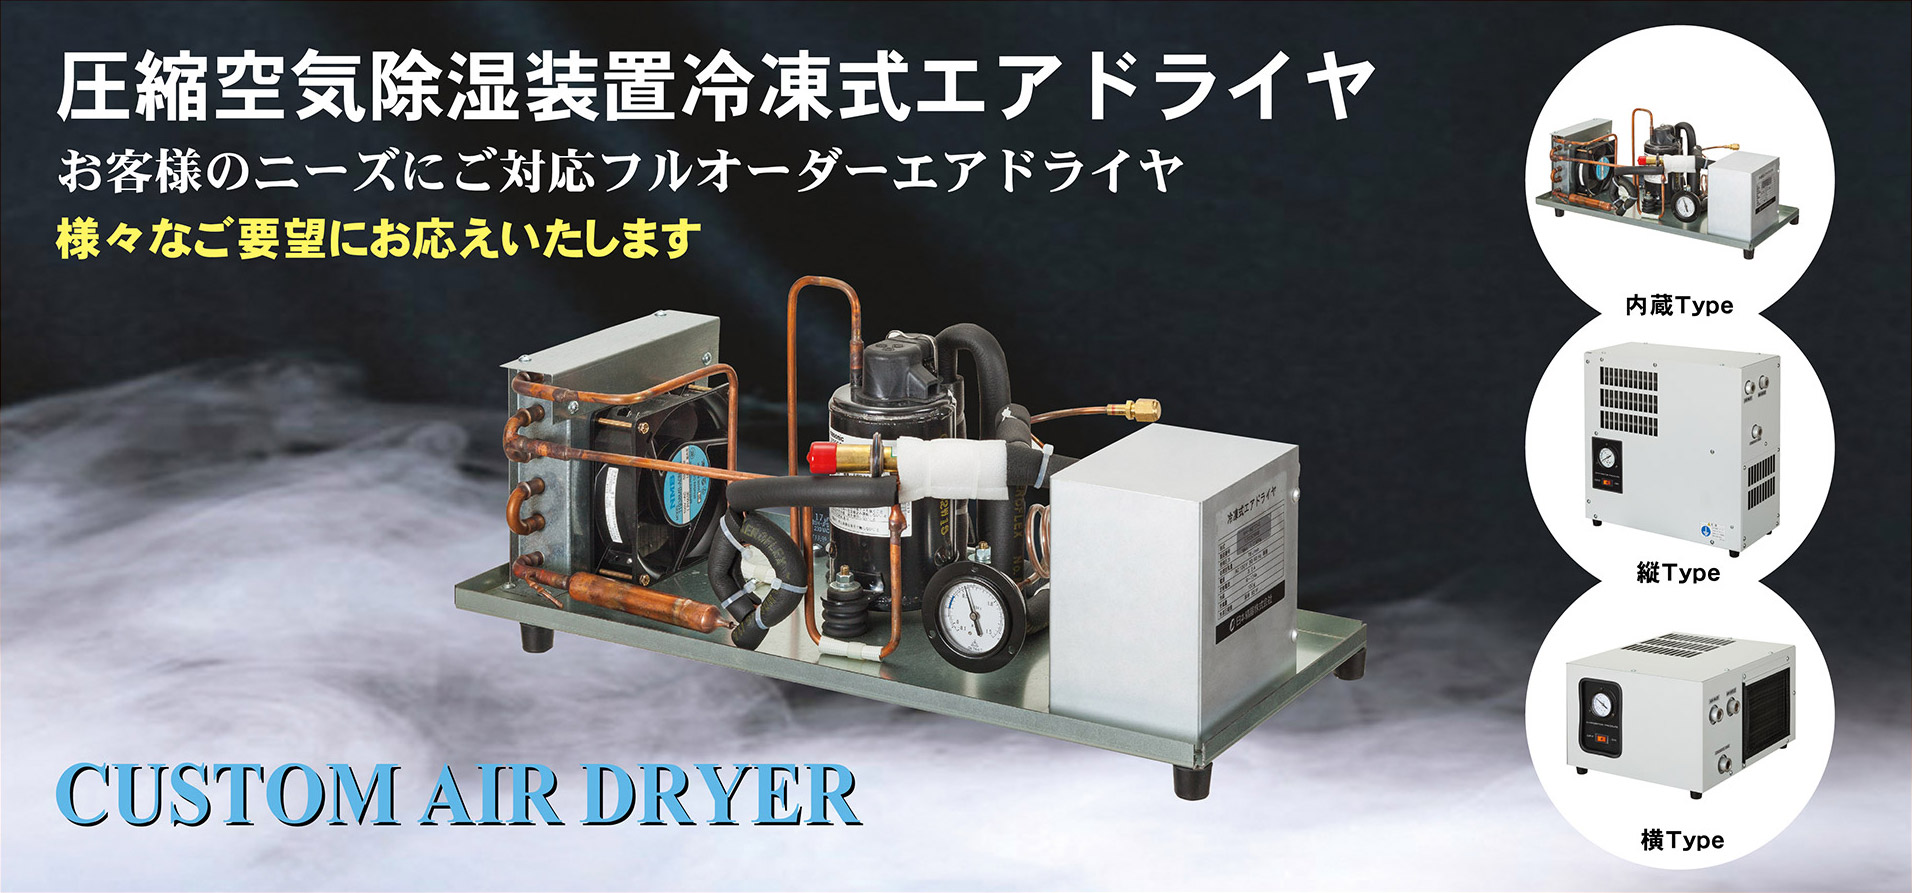 空気圧機器メーカー 日本精器株式会社